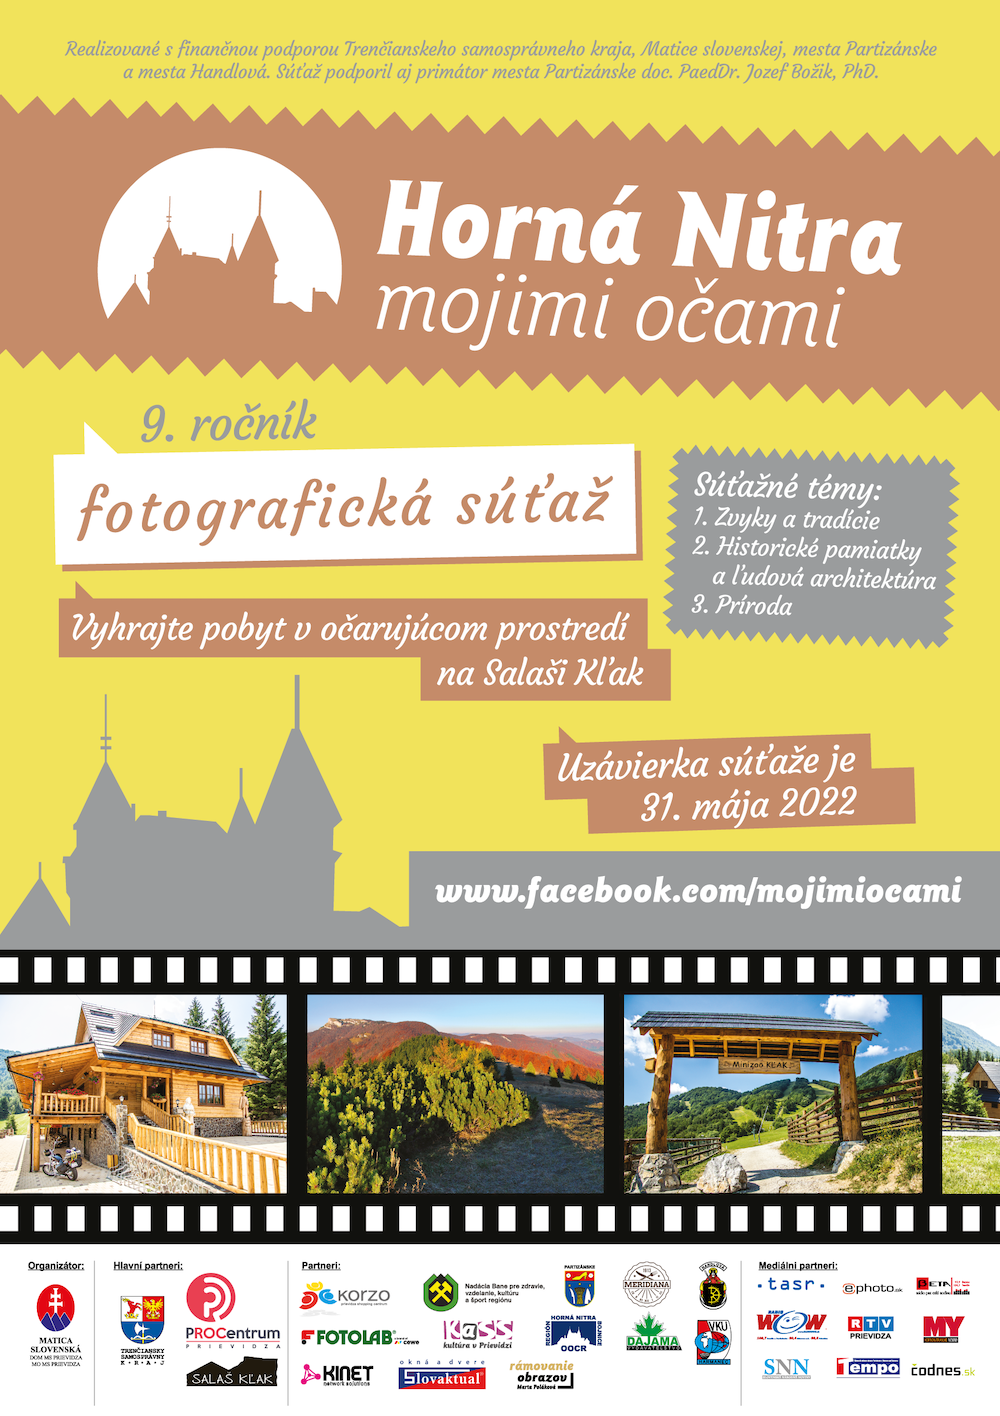 Súťaž Horná Nitra mojimi očami 2022 predstaví najkrajšie fotografie regiónu